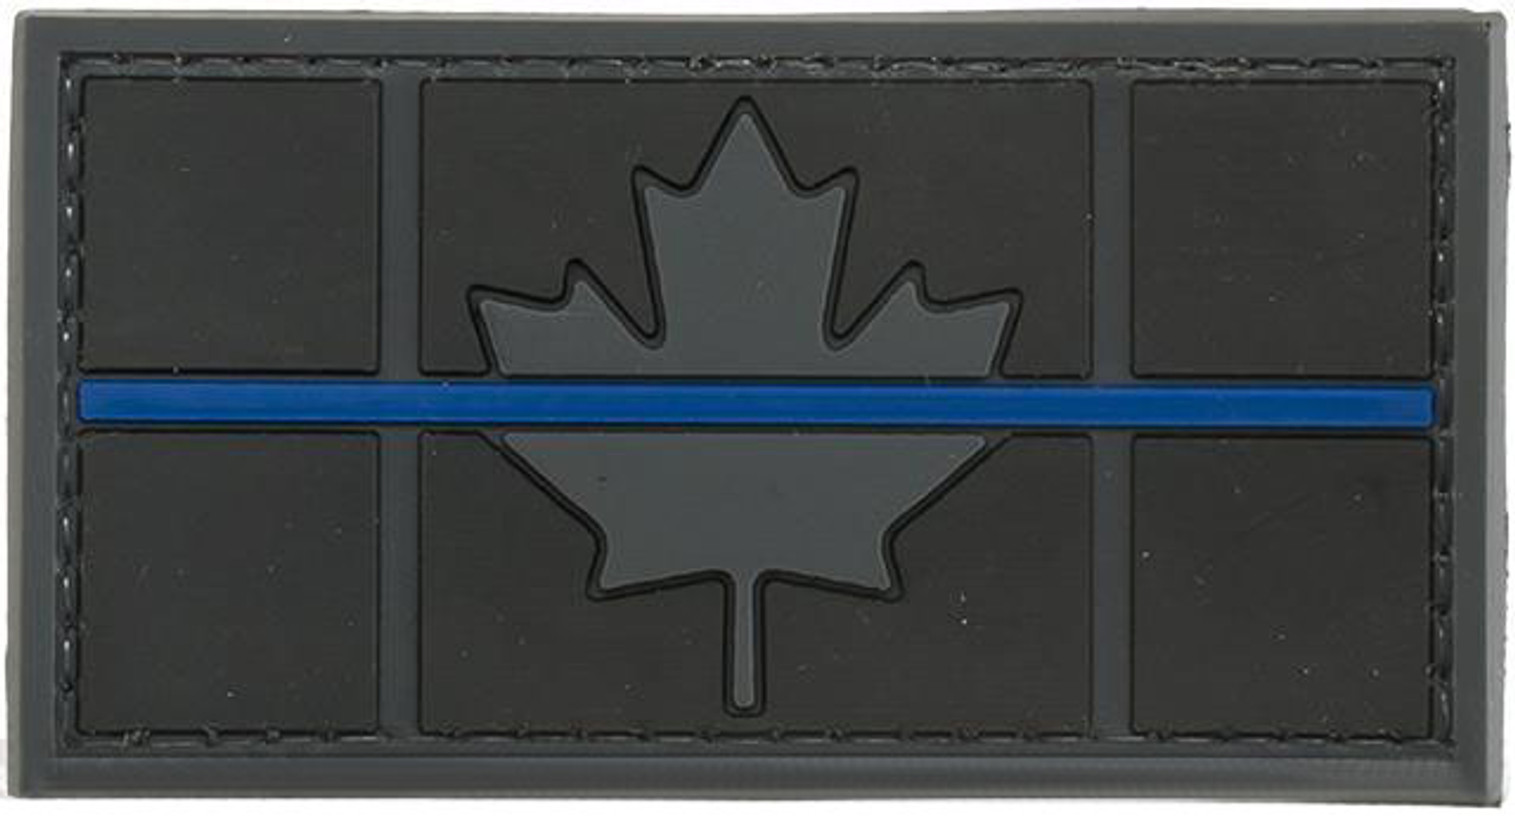 Matrix Canadian "Thin Blue Line" PVC Morale Patch - Subdued